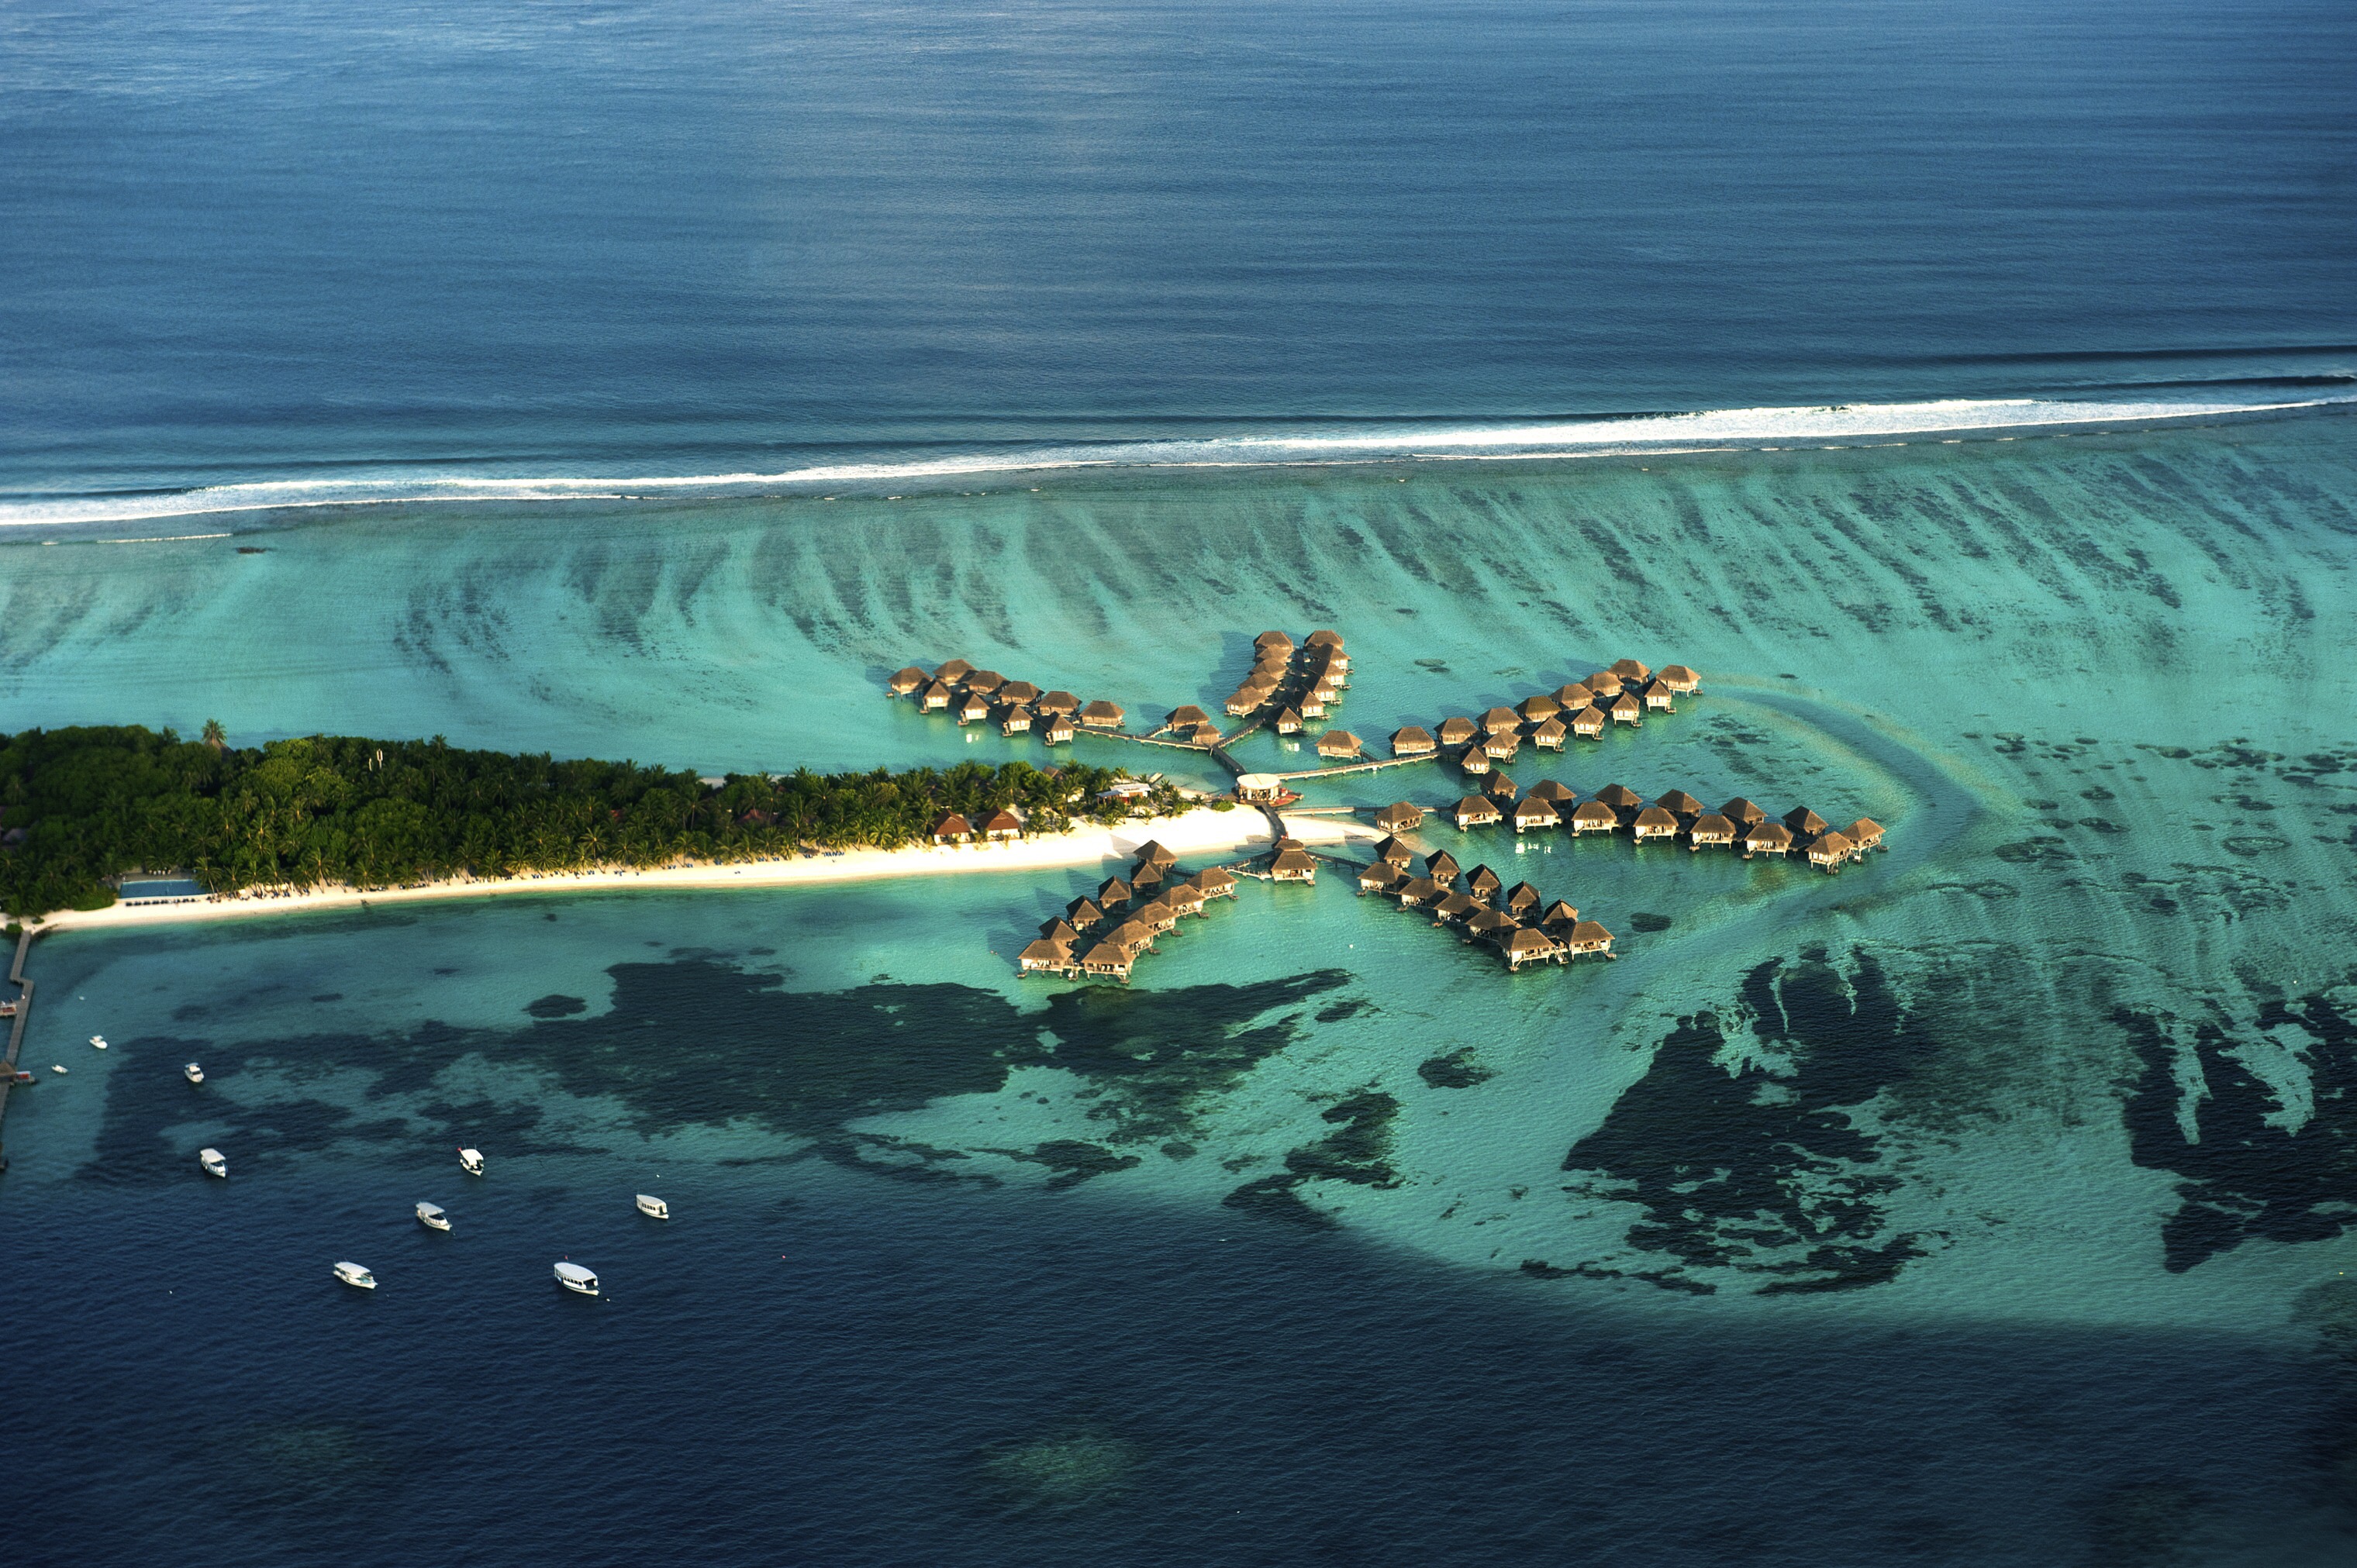 maldives tourist places to visit